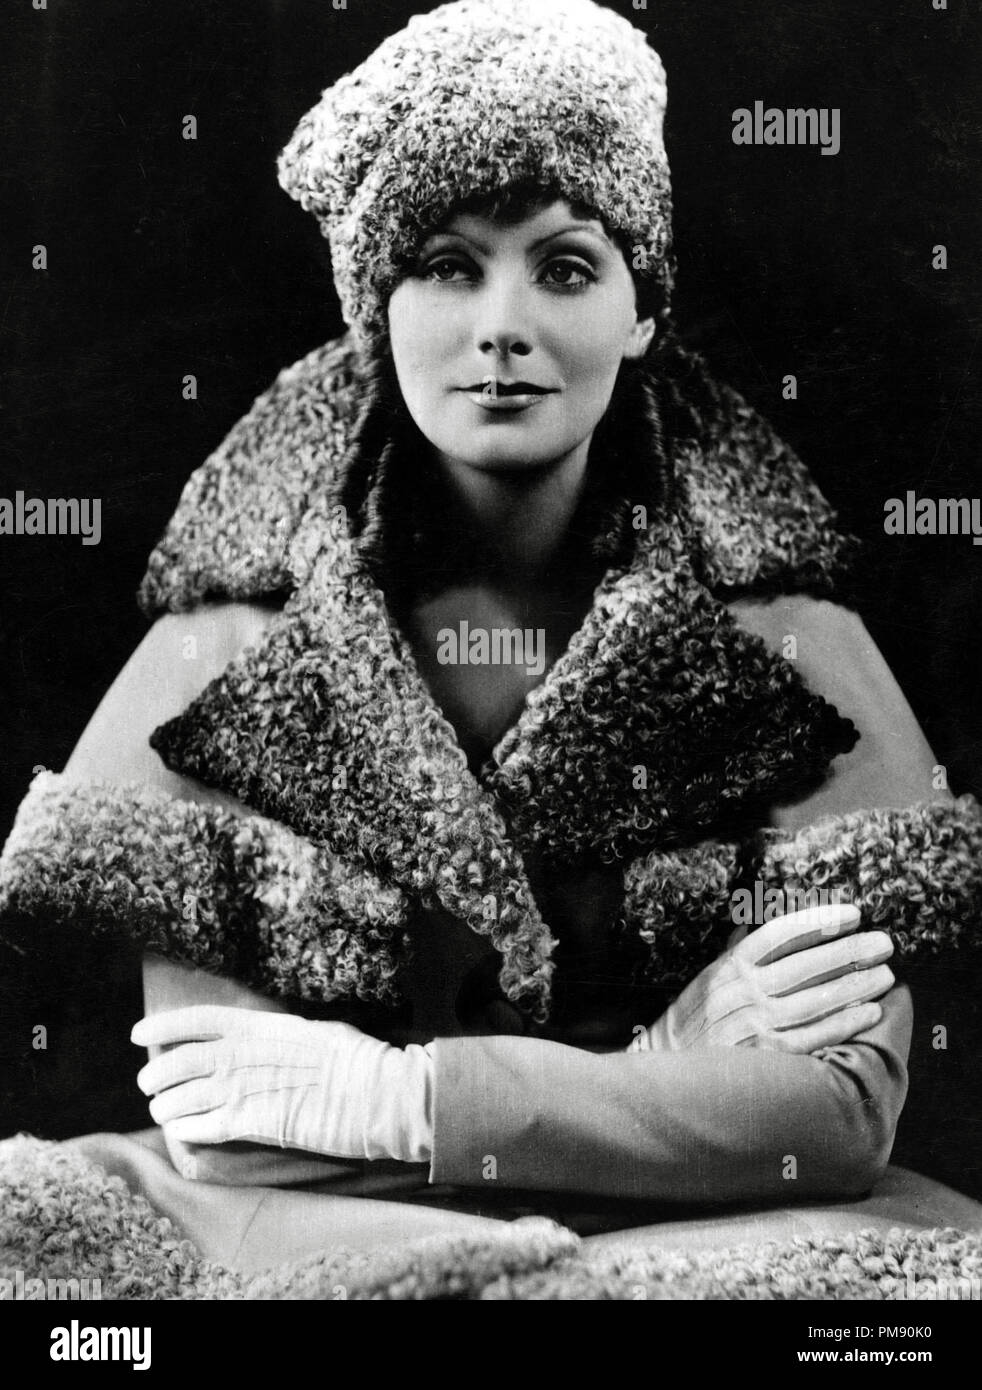 (Archivística Cine Clásico - Retrospectiva) Greta Garbo Greta Garbo, 1930 Archivo de referencia # 31523 012tha Foto de stock